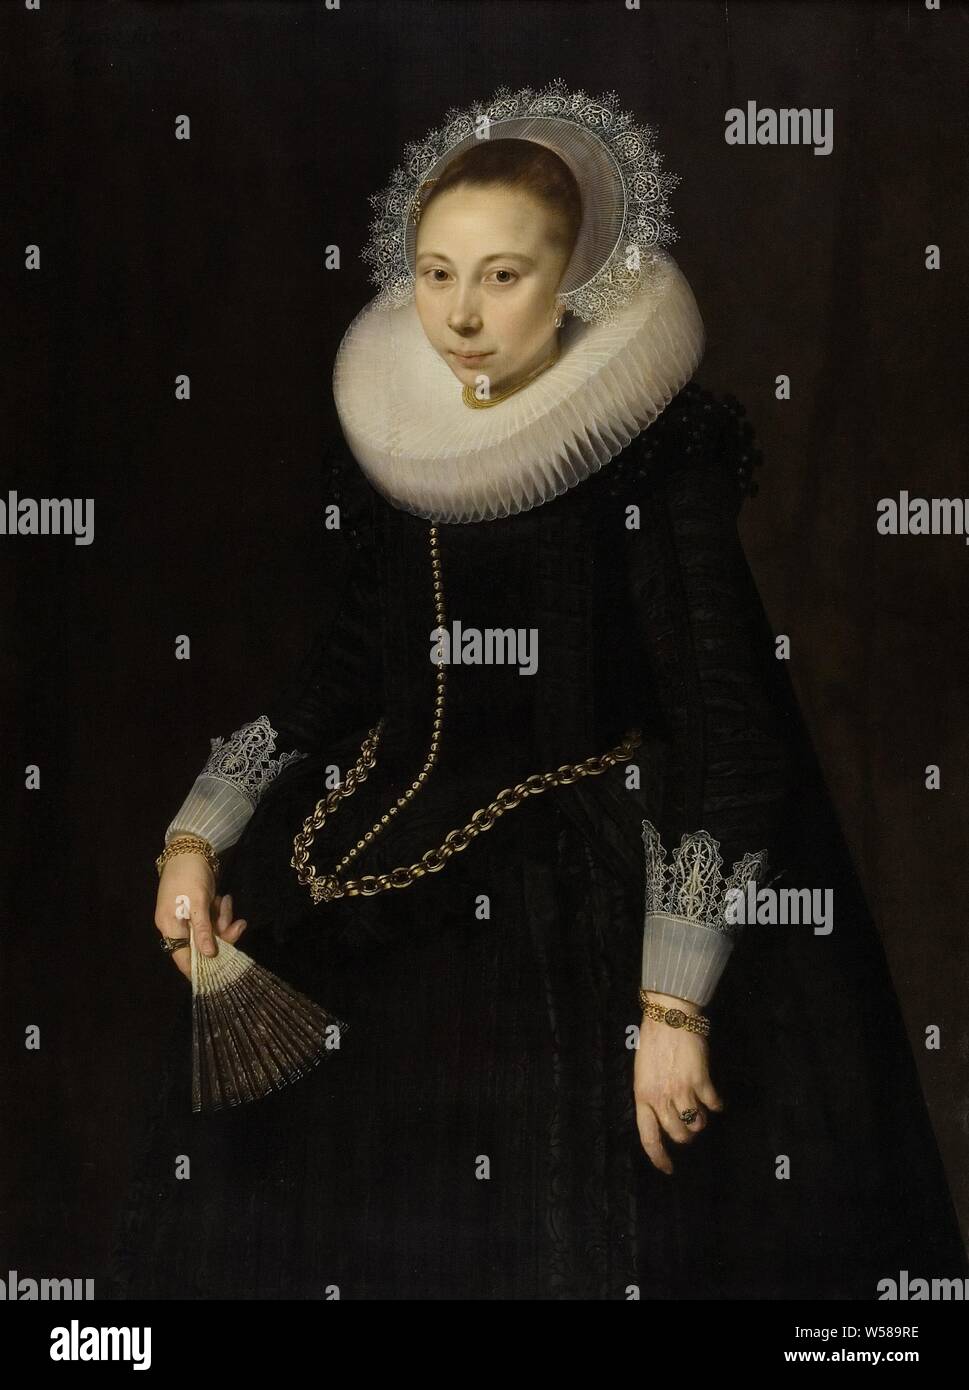 Overrijn Portrait ou Maria van Schoterbosch (1599 / 1600-1638), Portrait de Maria van Overrijn Schoterbosch (1599 / 1600-1638), épouse de Dirck Corver. Genou, debout à gauche, un ventilateur dans la main droite. Maria Overrijn à partir de Schoterbosch, Cornelis van der Voort, 1622, panneau, de la peinture à l'huile (peinture), support : h 122 cm × w 90,6 cm frame : H 134 cm × w 102,8 cm × t 5 cm taille de la vue : h 119,7 cm × w 88,8 cm Banque D'Images